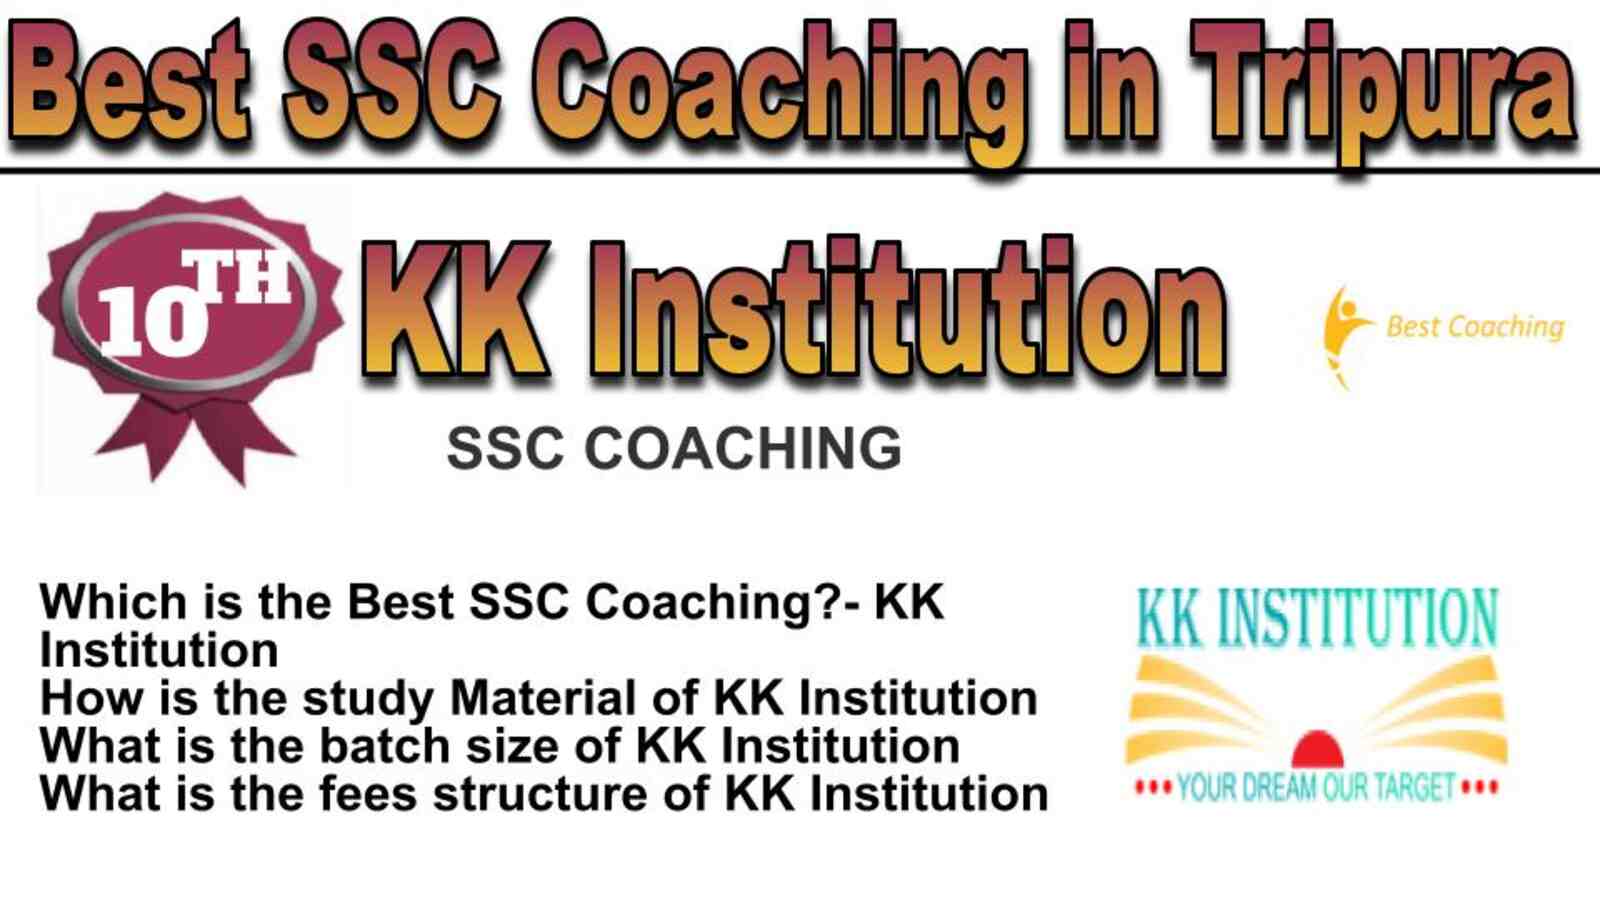 Rank 10 best SSC Coaching in Tripura